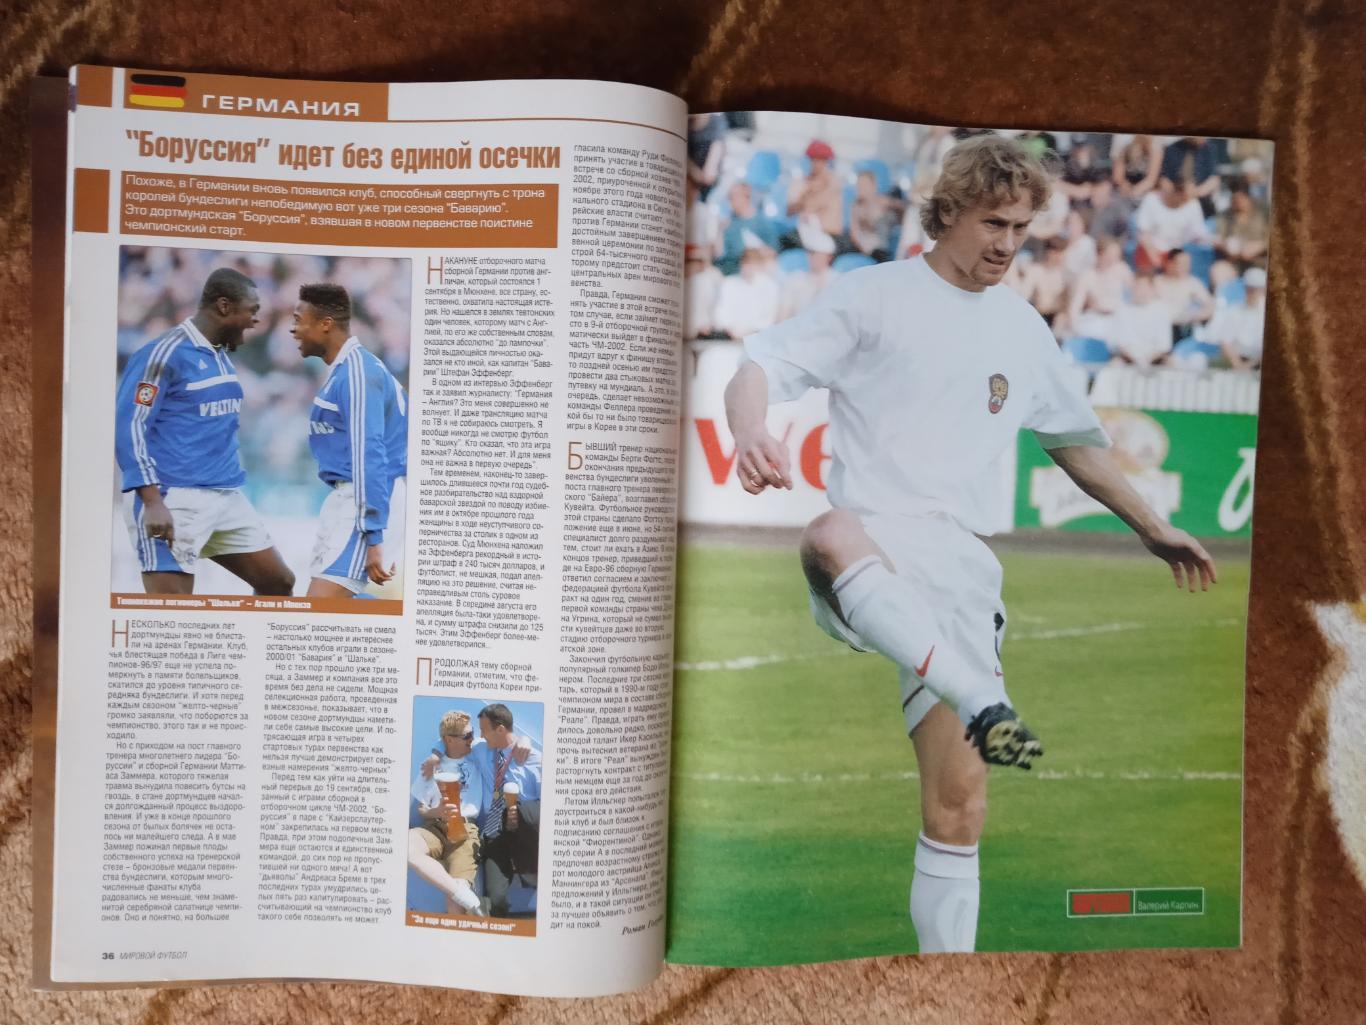 Журнал.Мировой футбол.Октябрь 2001 г. (Постеры). 1